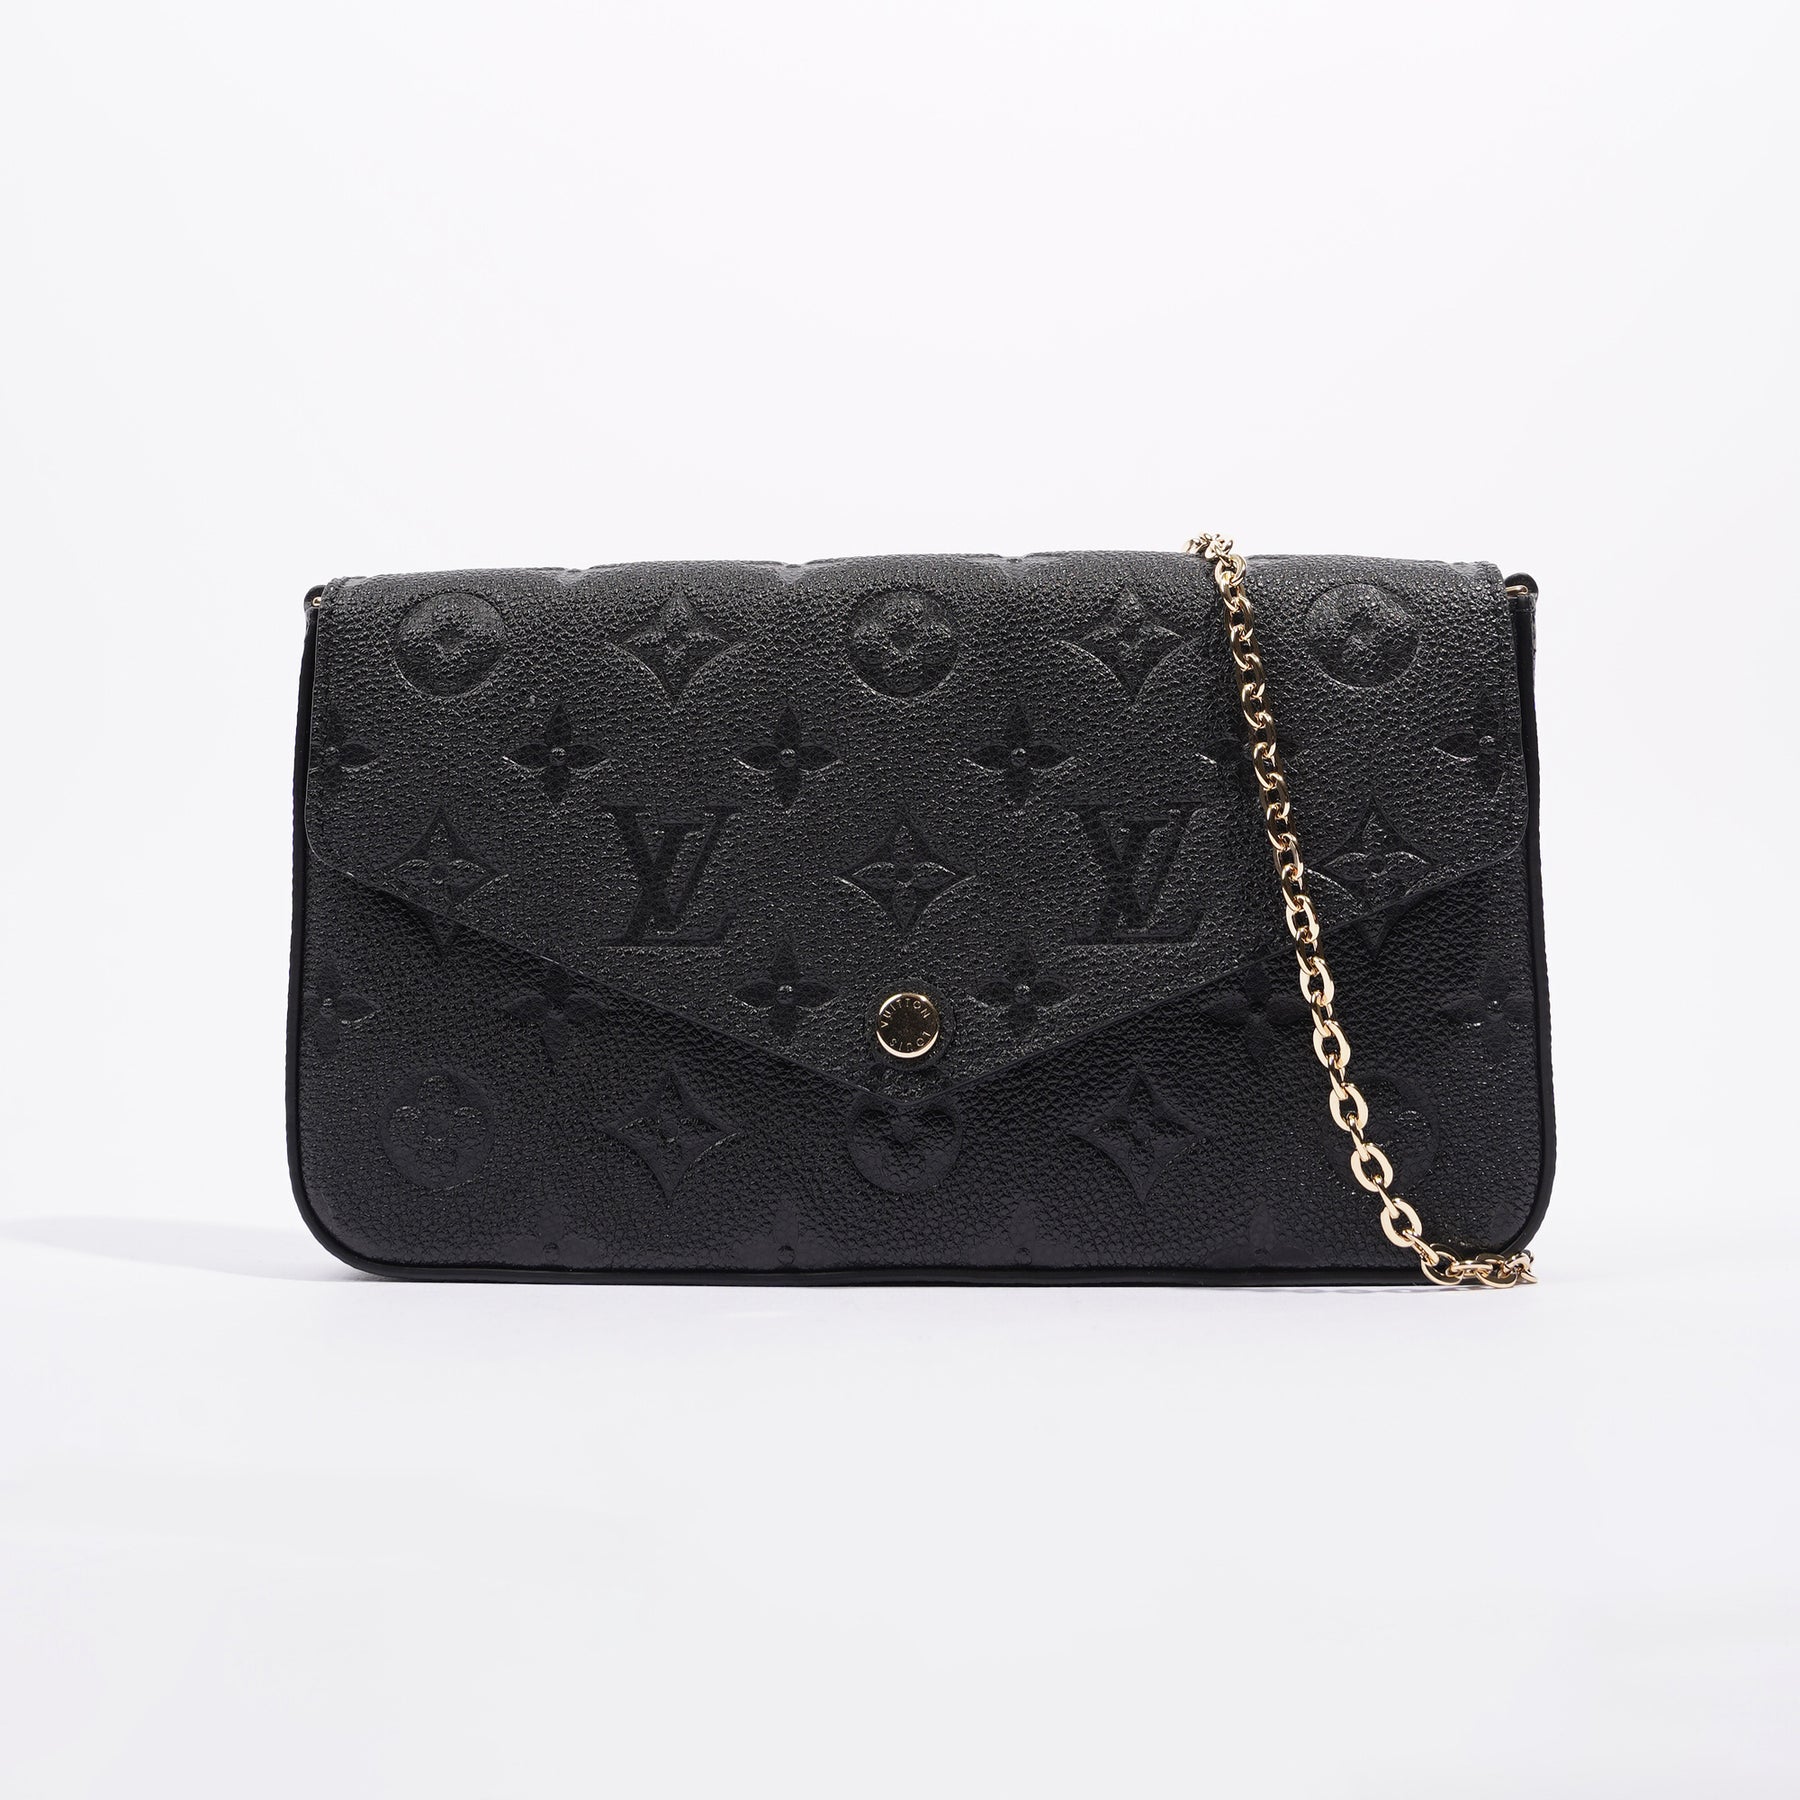 Louis Vuitton Felicie Pochette Empreinte Black Chain Wallet